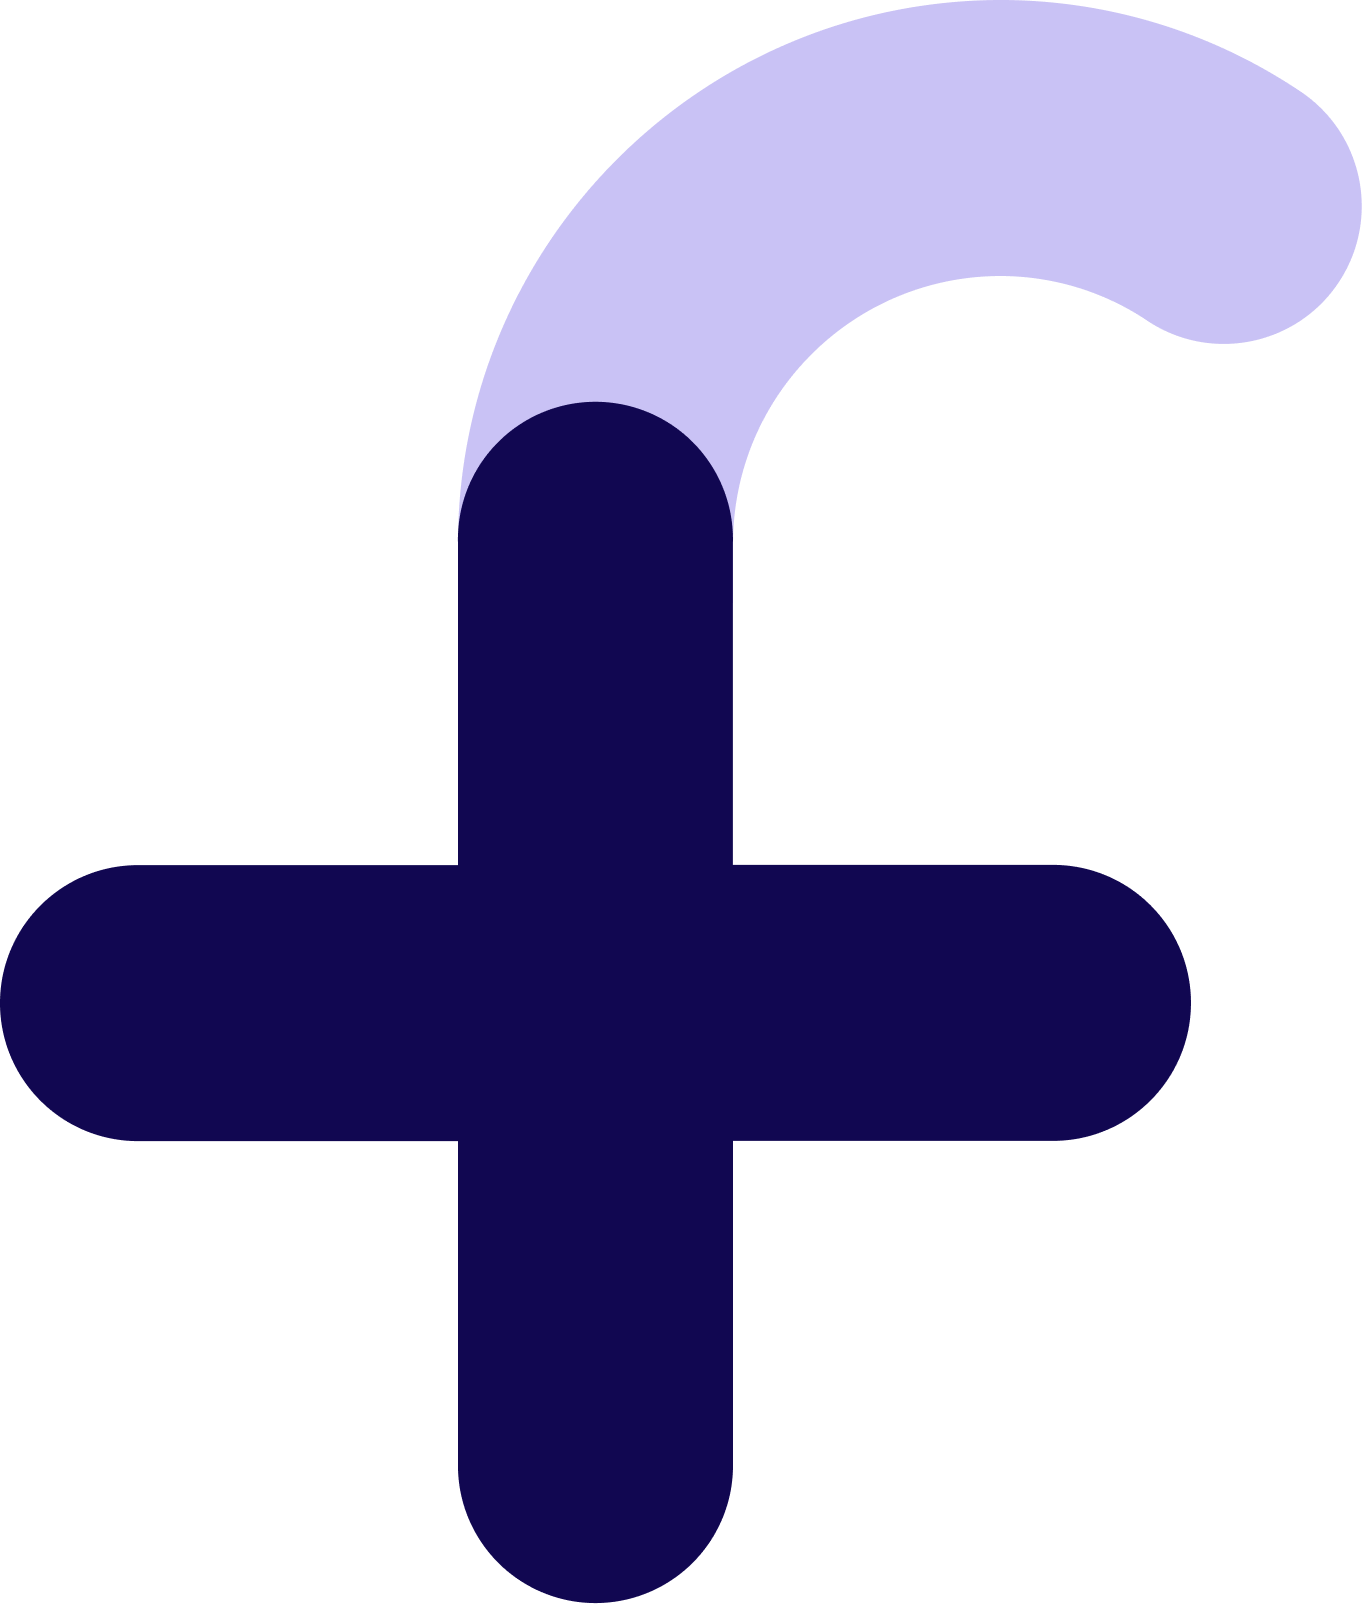 Fiken-logo